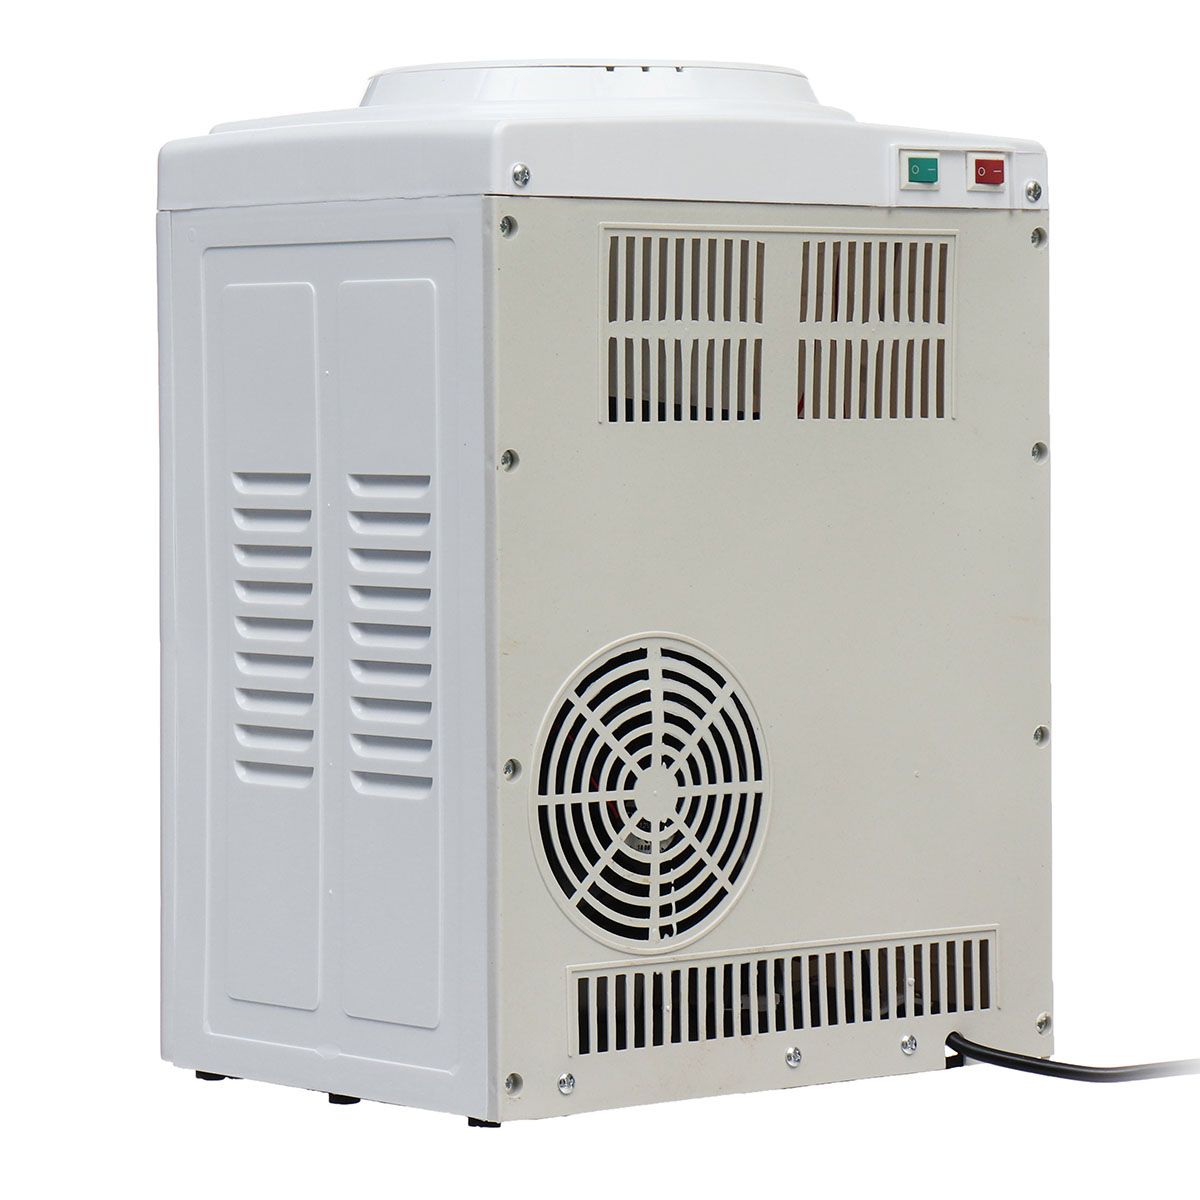 220V-Electric-Cold-Hot-Water-Beverage-Cooler-Dispenser-3-5-Gallon-Home-Office-Use-Desktop-1617196